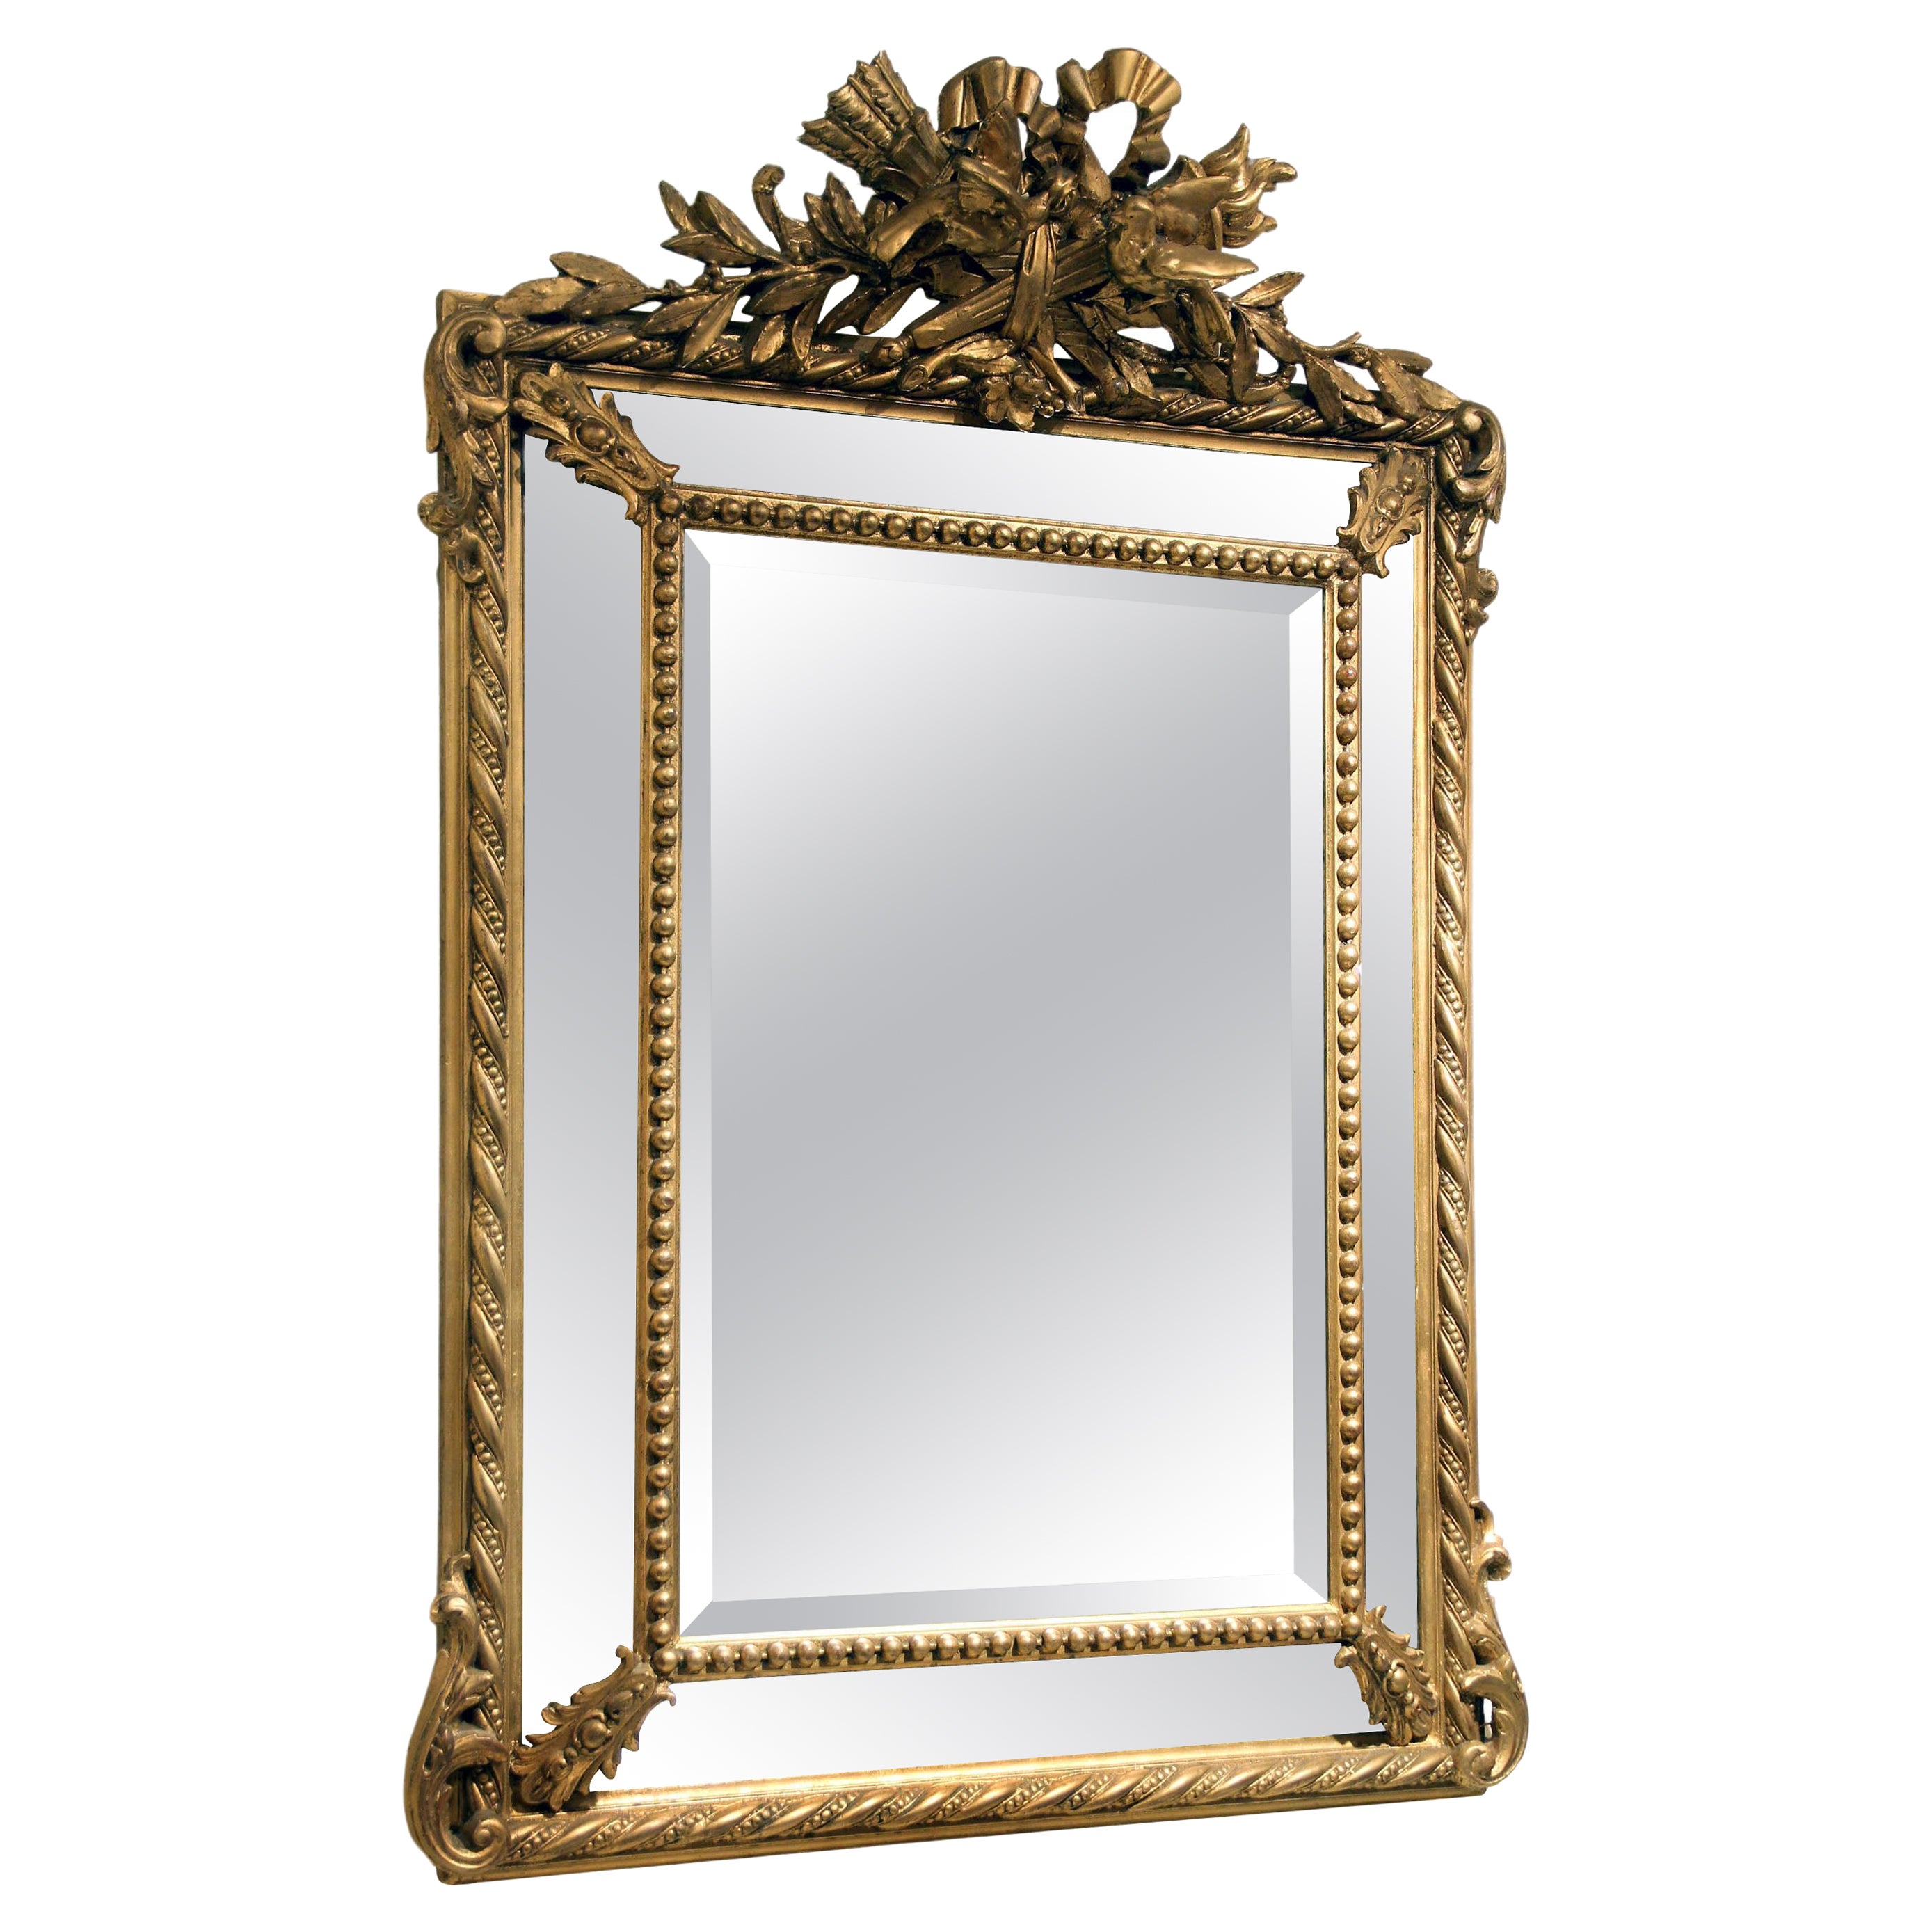 Magnifique miroir en bois doré sculpté à la main de la fin du XIXe siècle